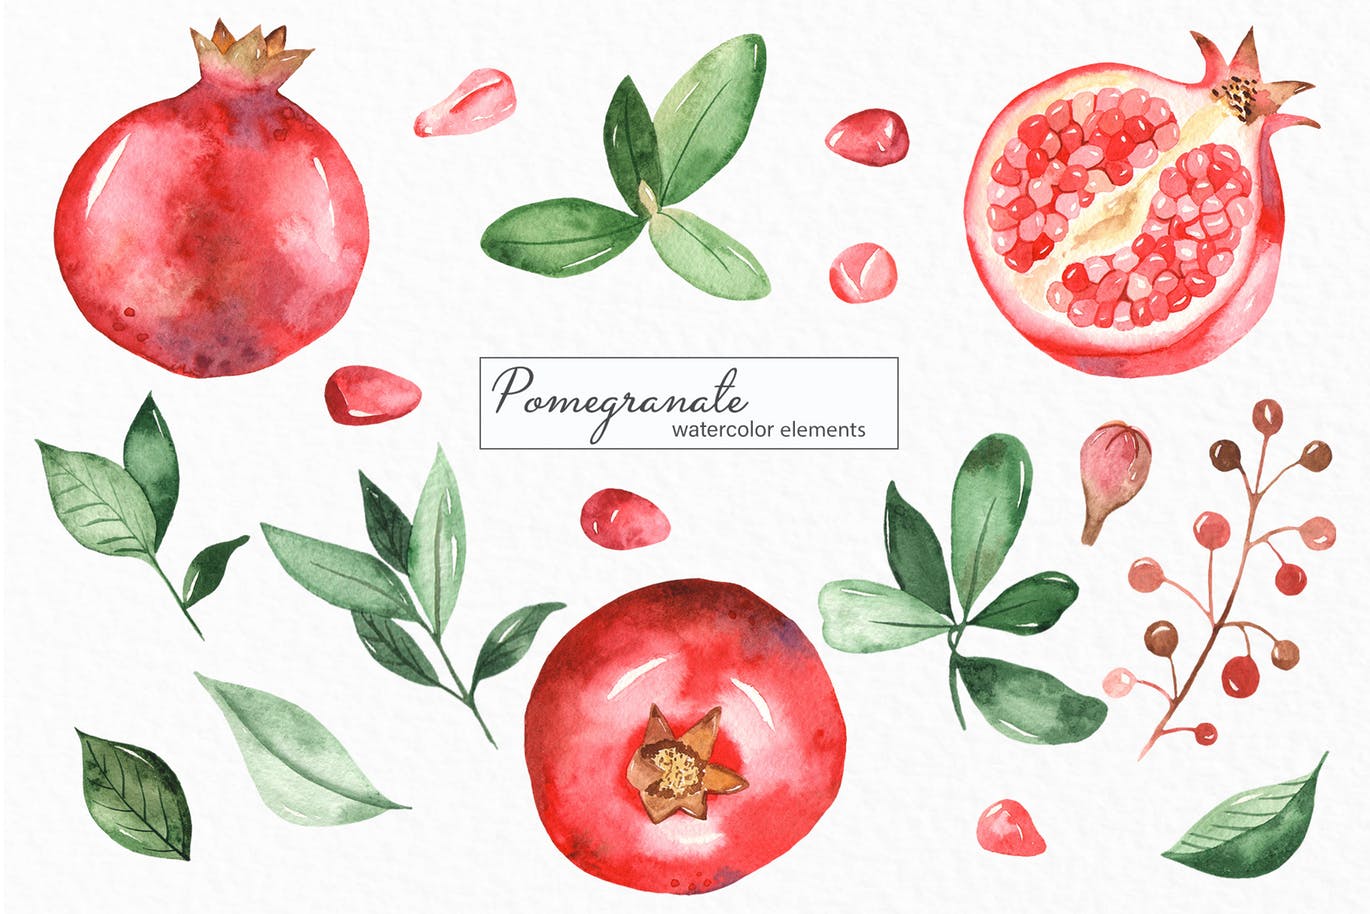 水彩石榴剪贴画/花框/花环第一素材精选设计素材 Watercolor pomegranate. Clipart, frames, wreaths插图(2)